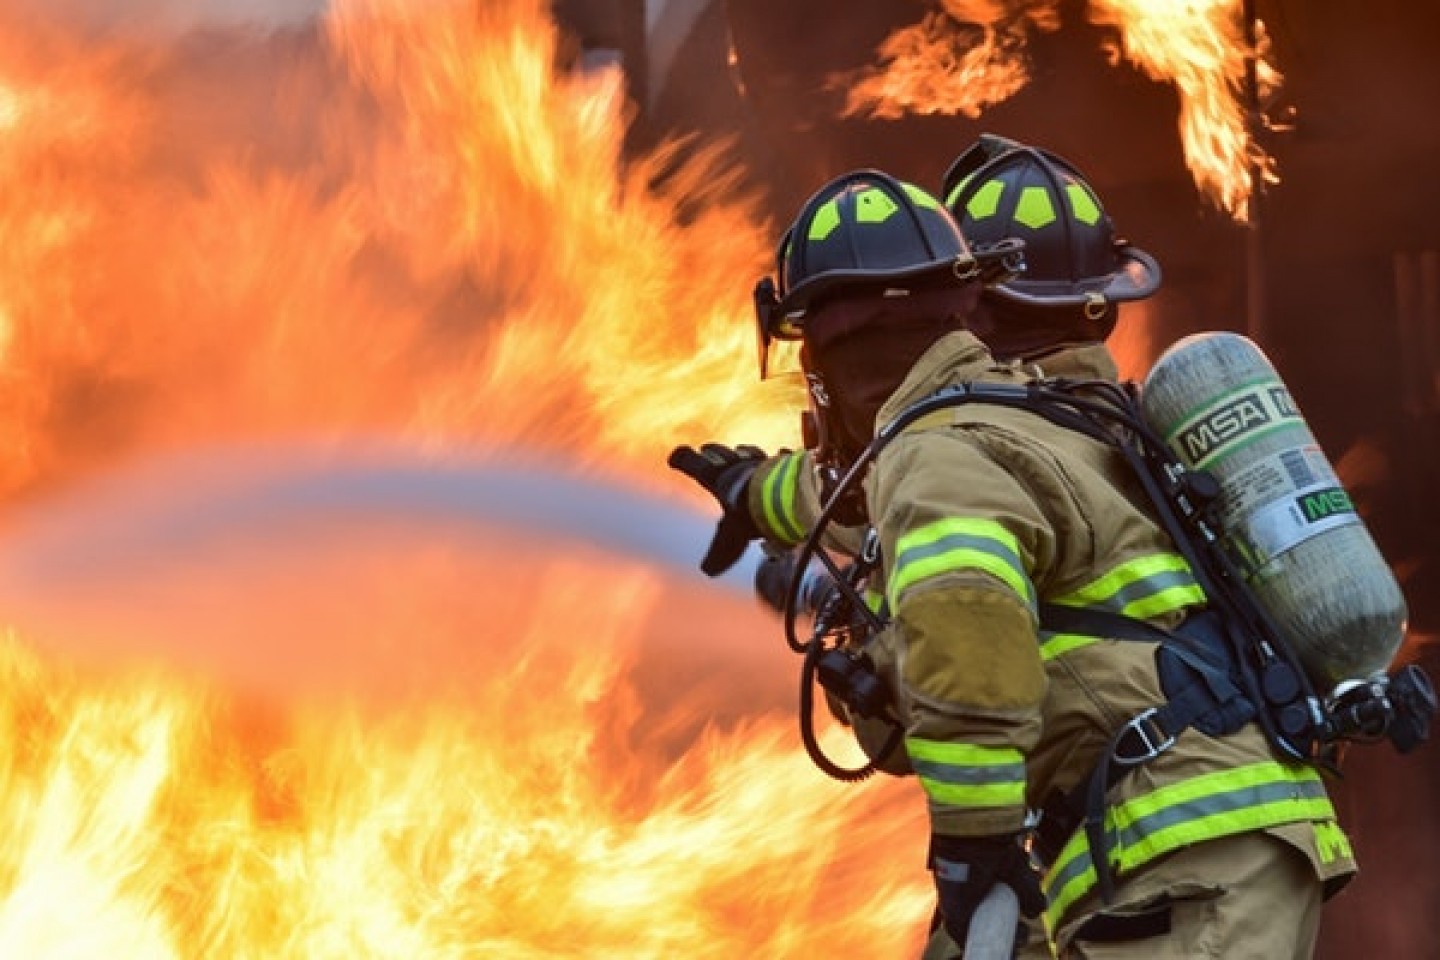 Heroji iz sjene – o vatrogascima